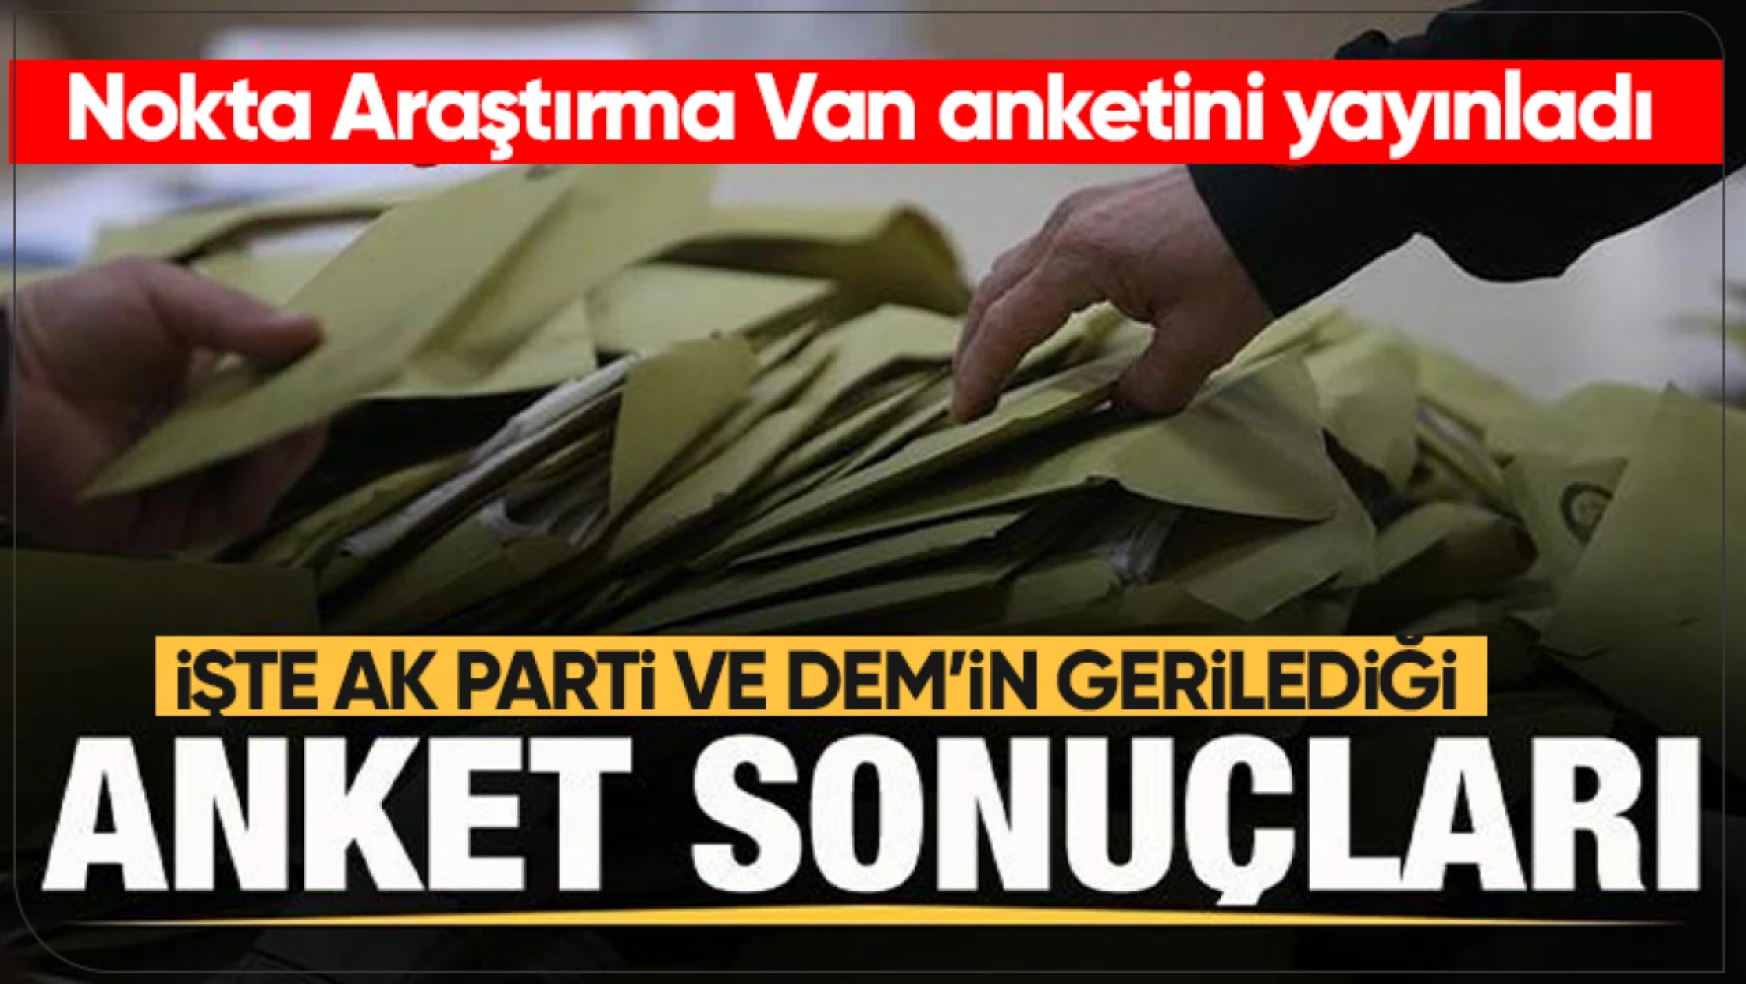 Nokta Araştırma Van anket sonucunu açıkladı: AK Parti ve DEM'in oyu düştü!